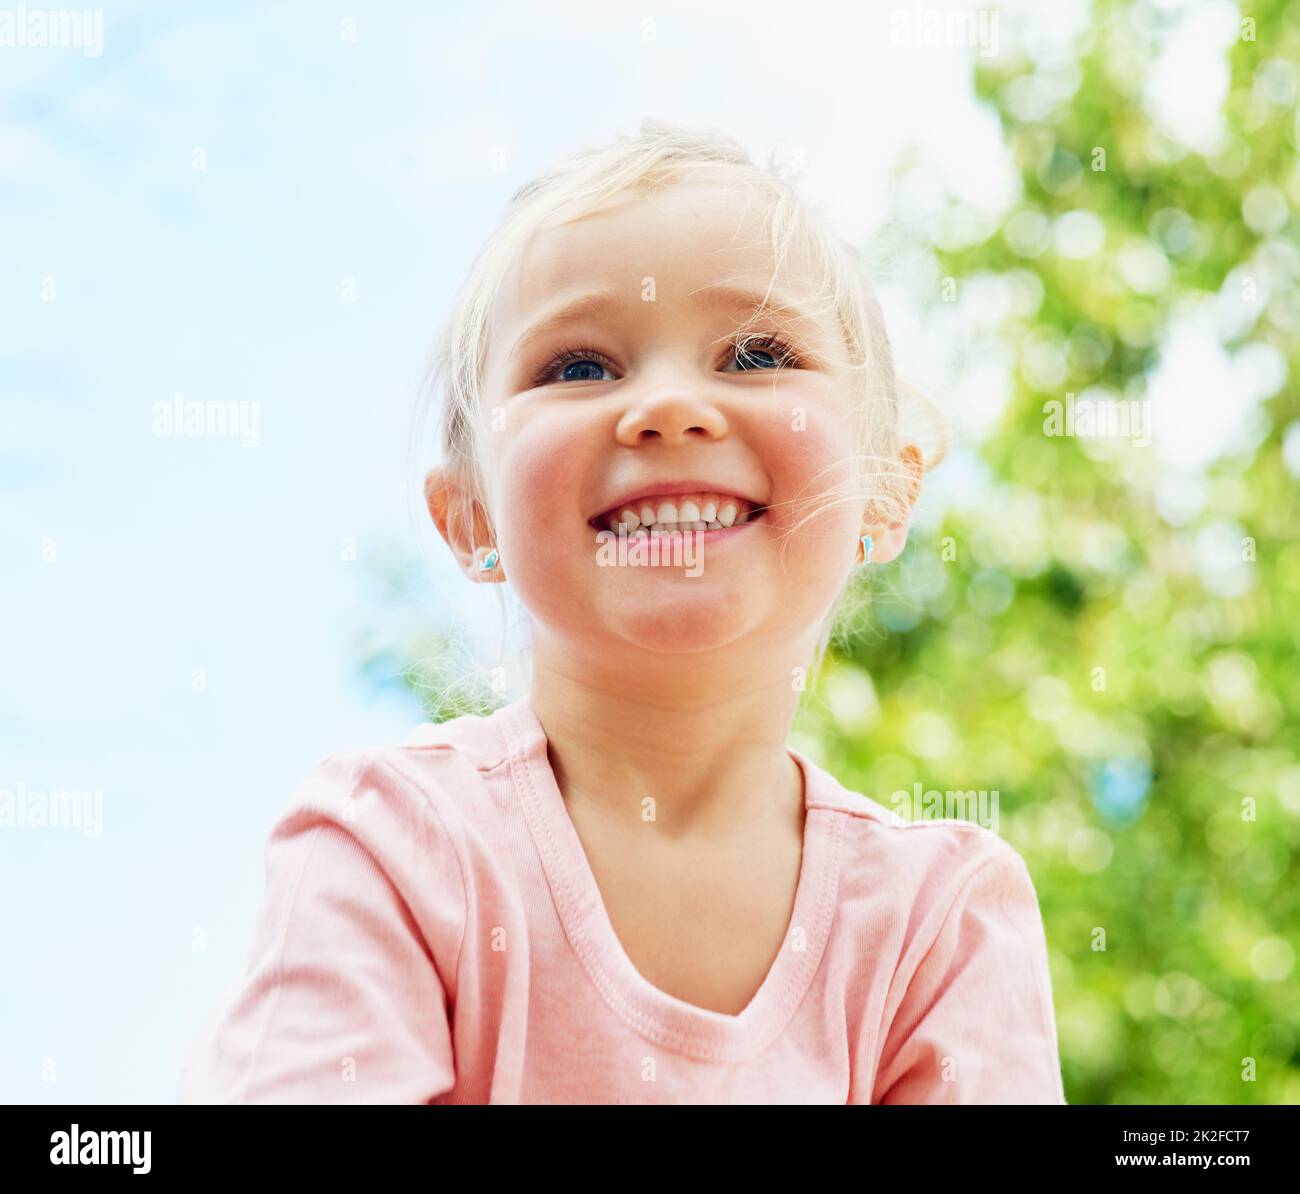 Spaß unter der Sommersonne. Aufnahme eines niedlichen kleinen Mädchens, das lächelt, während es draußen spielt. Stockfoto